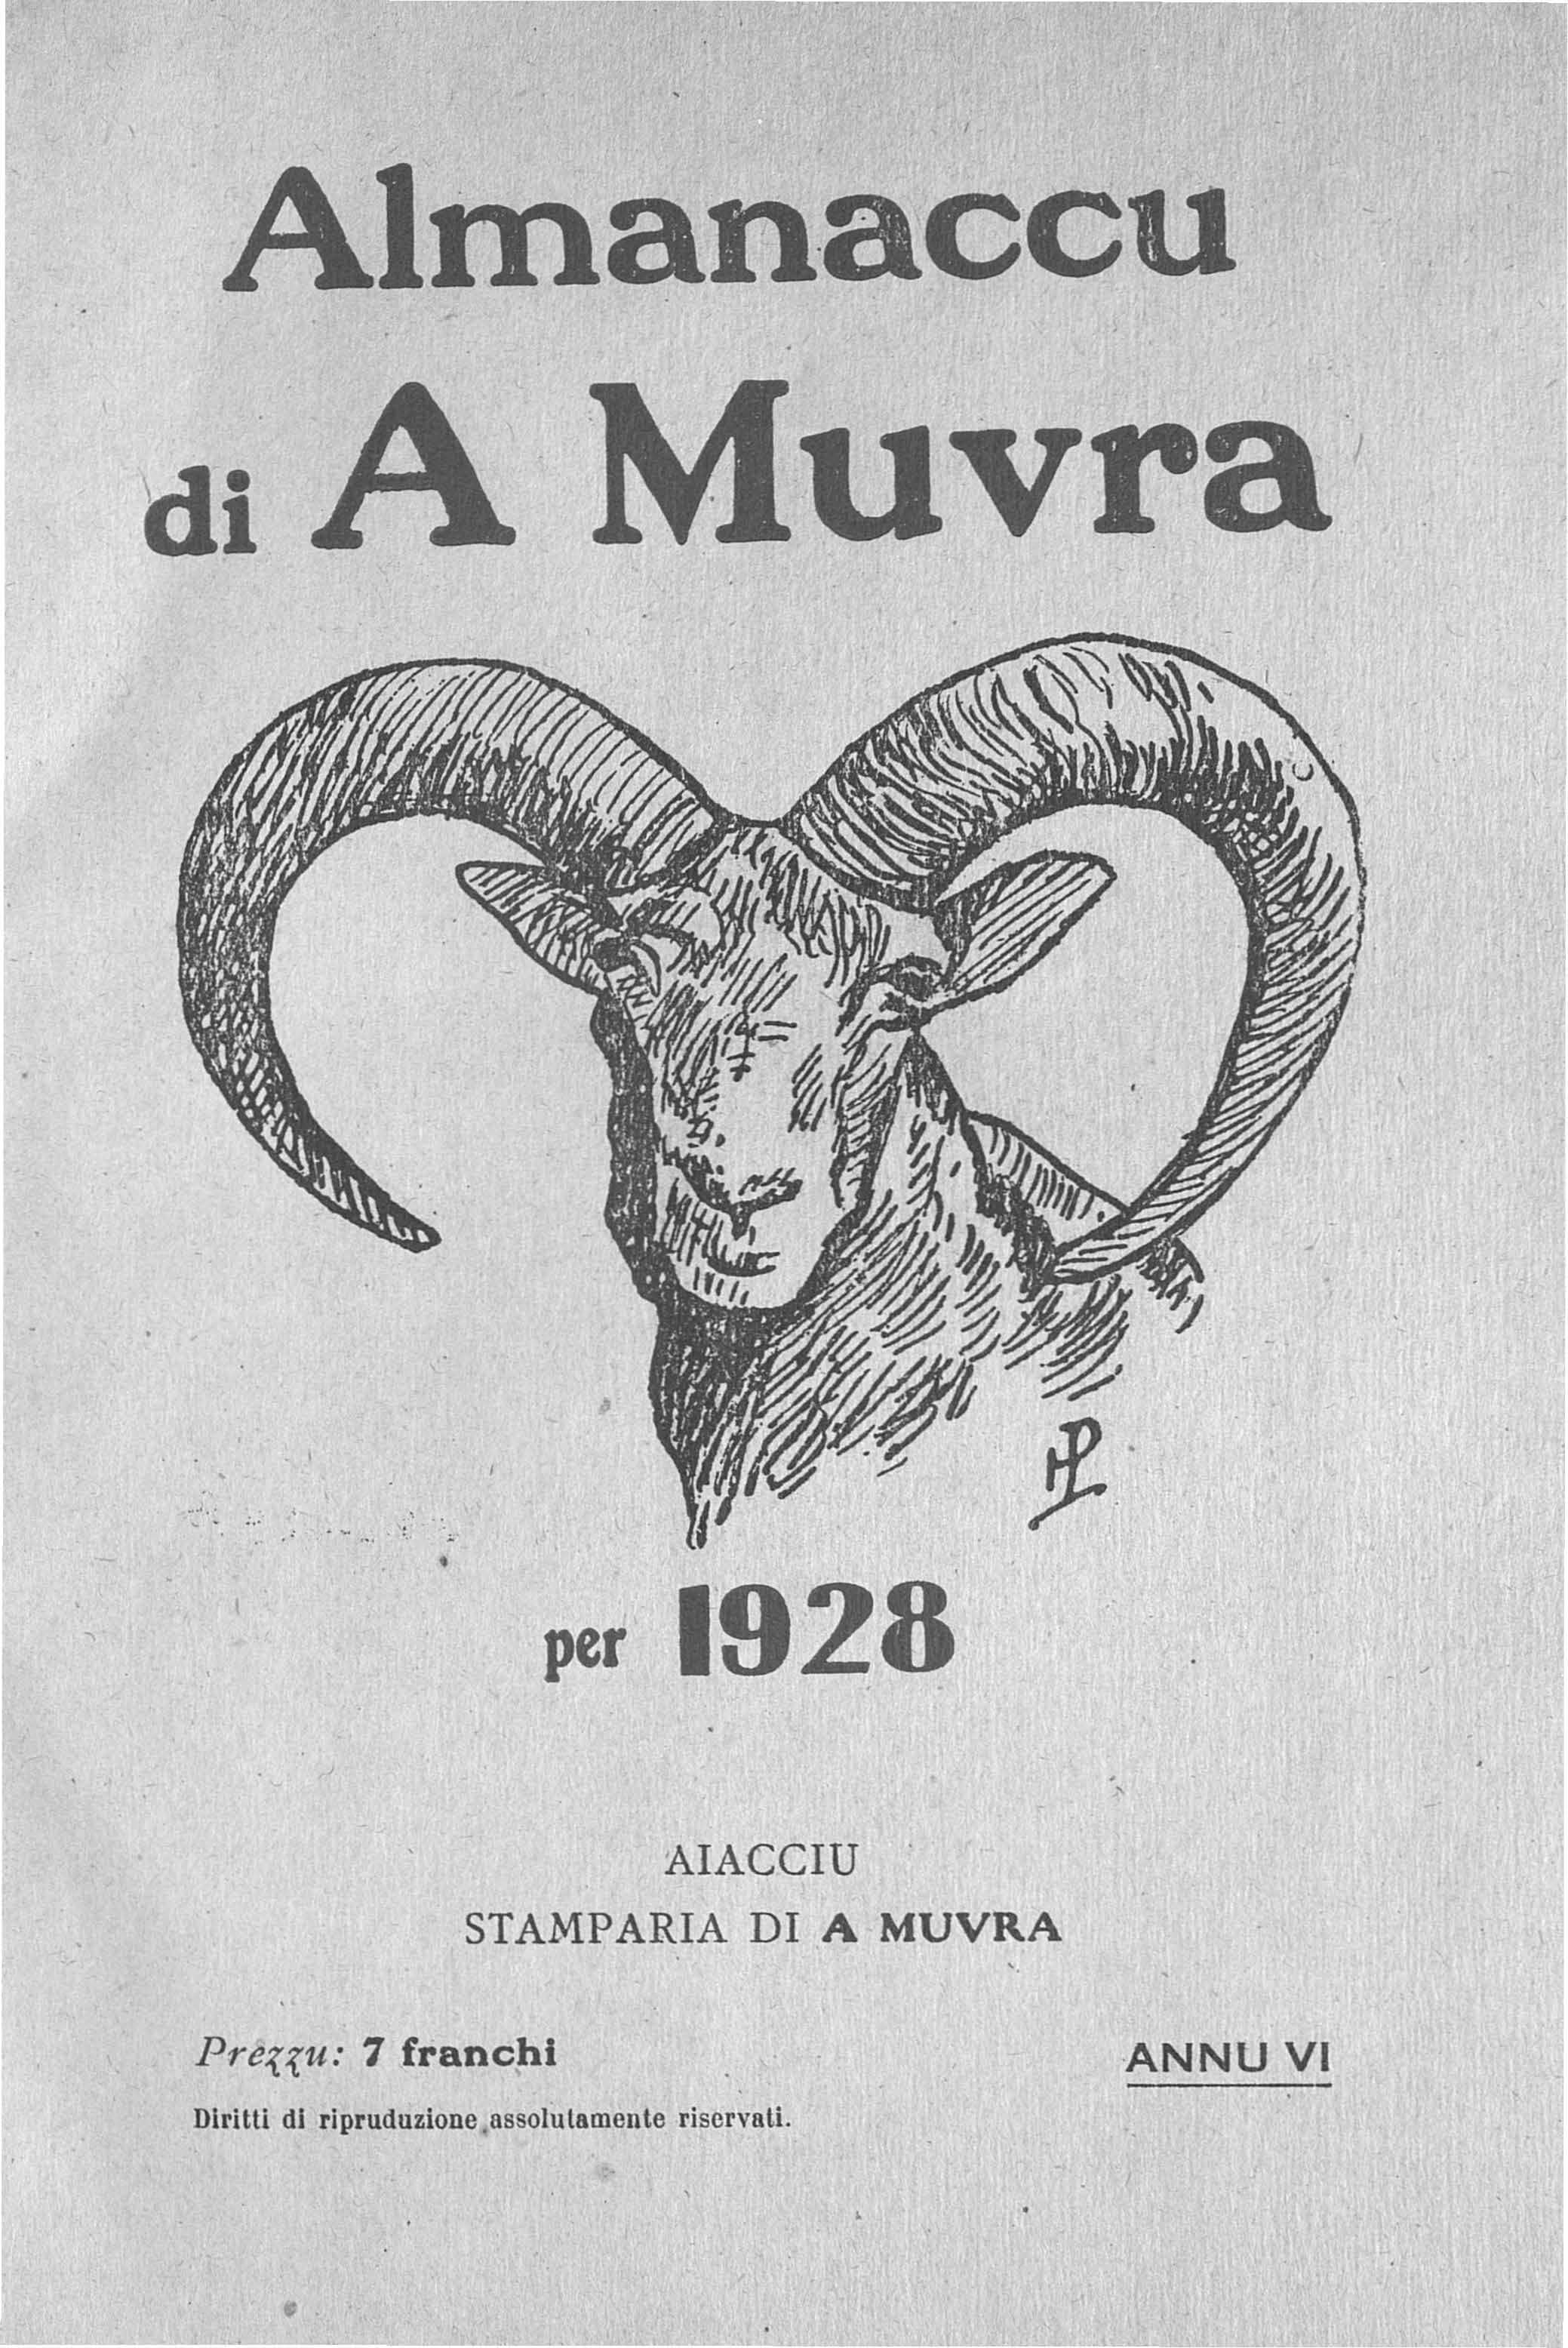 >Almanaccu di a Muvra 1928